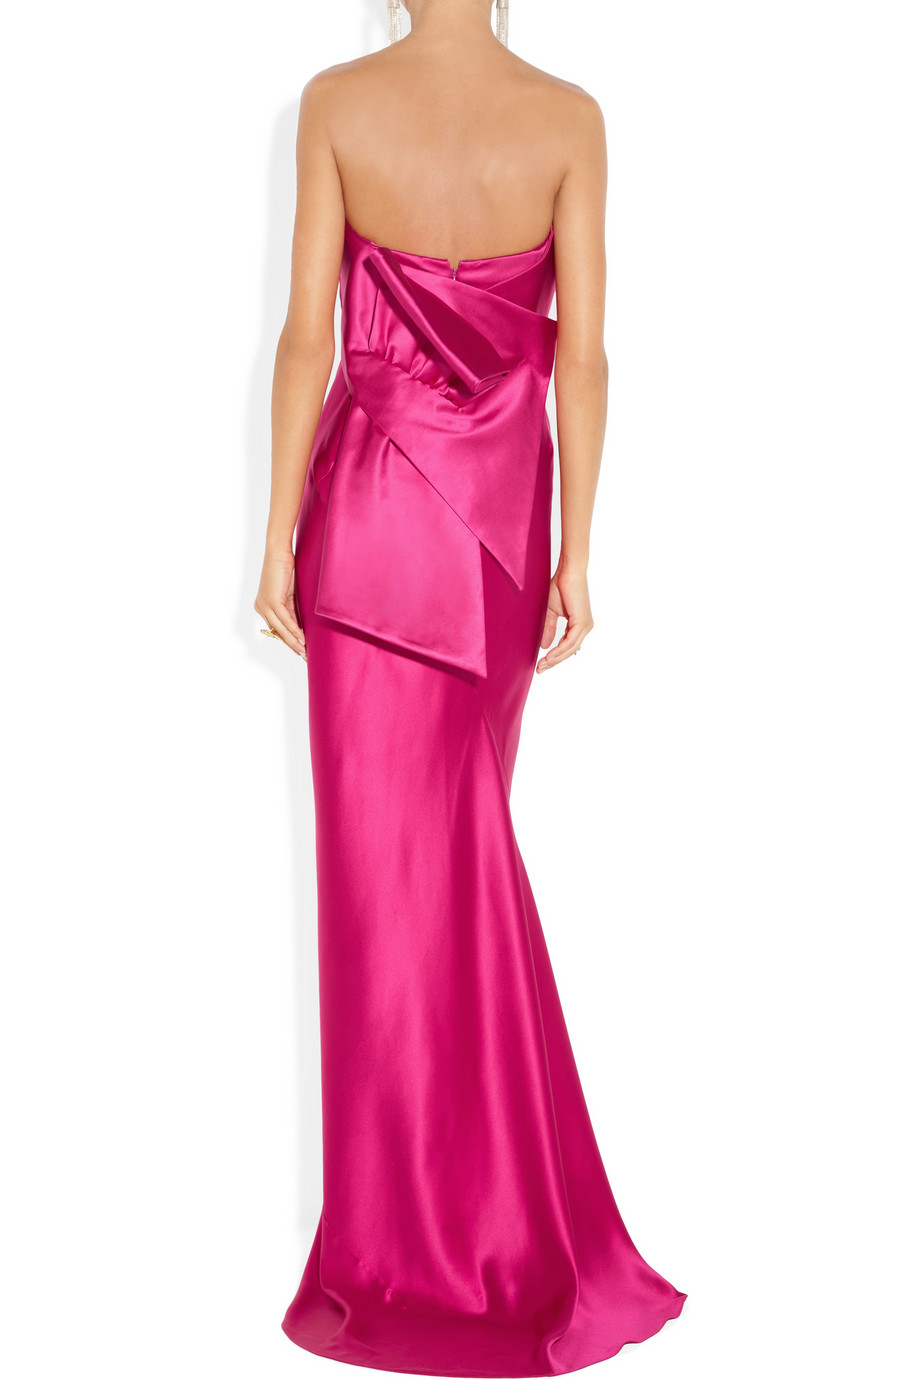 Donna Karan Strapless Duchesse satin Gown in Pink - Lyst